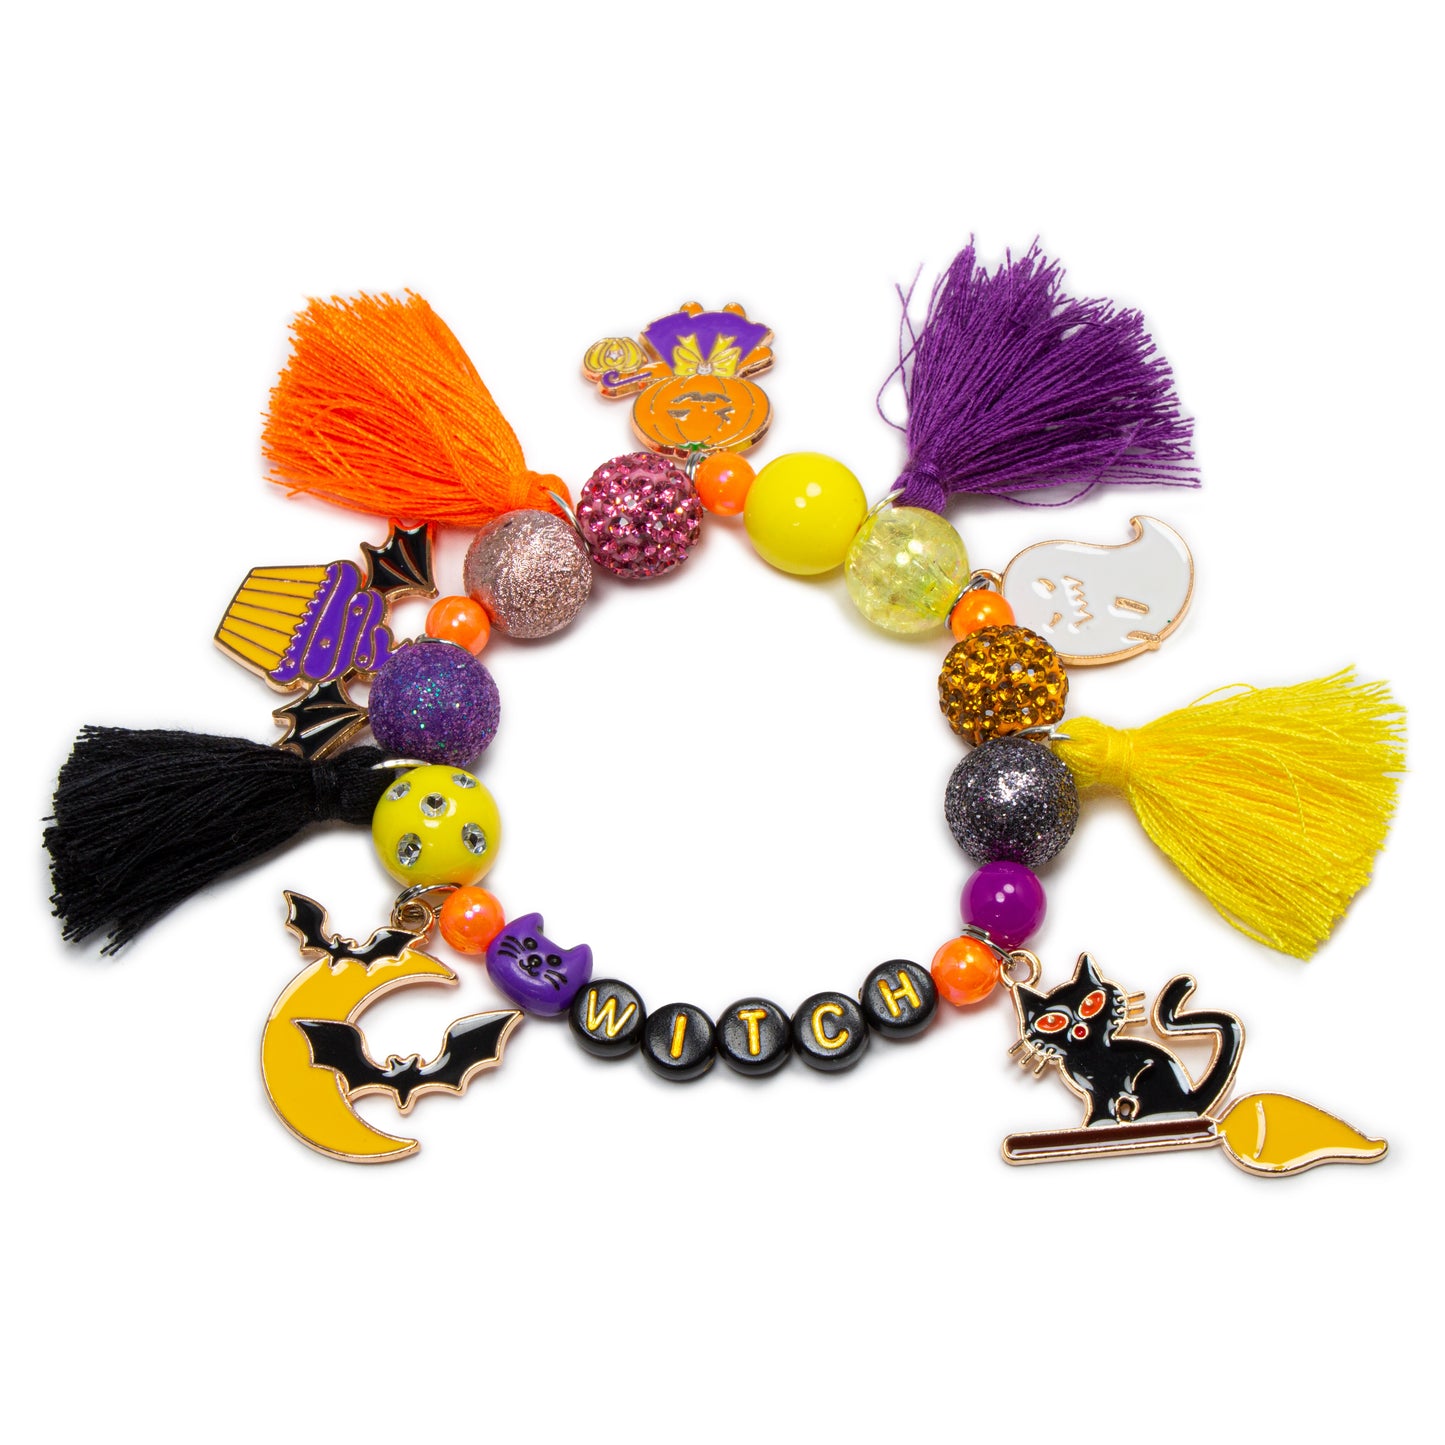 Halloween charm bracelet / Halloween tassel Boo bracelet / Witch bracelet